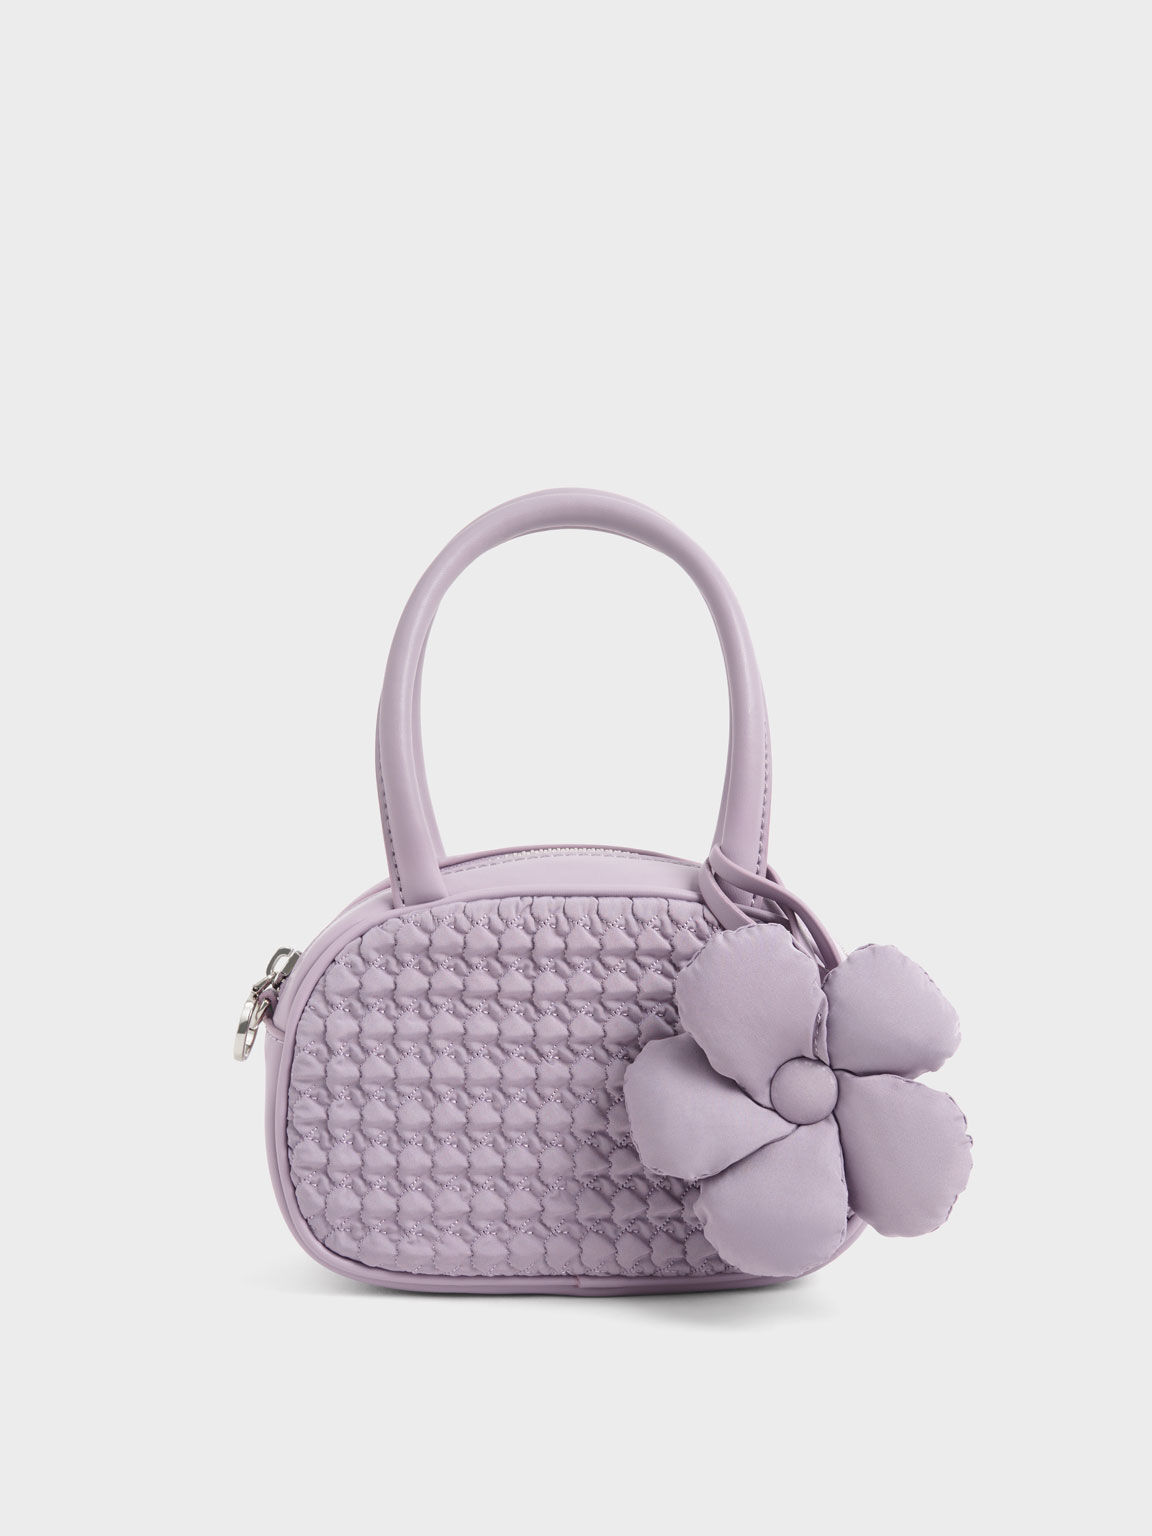 澎澎衍縫手提包, 紫丁香色, hi-res